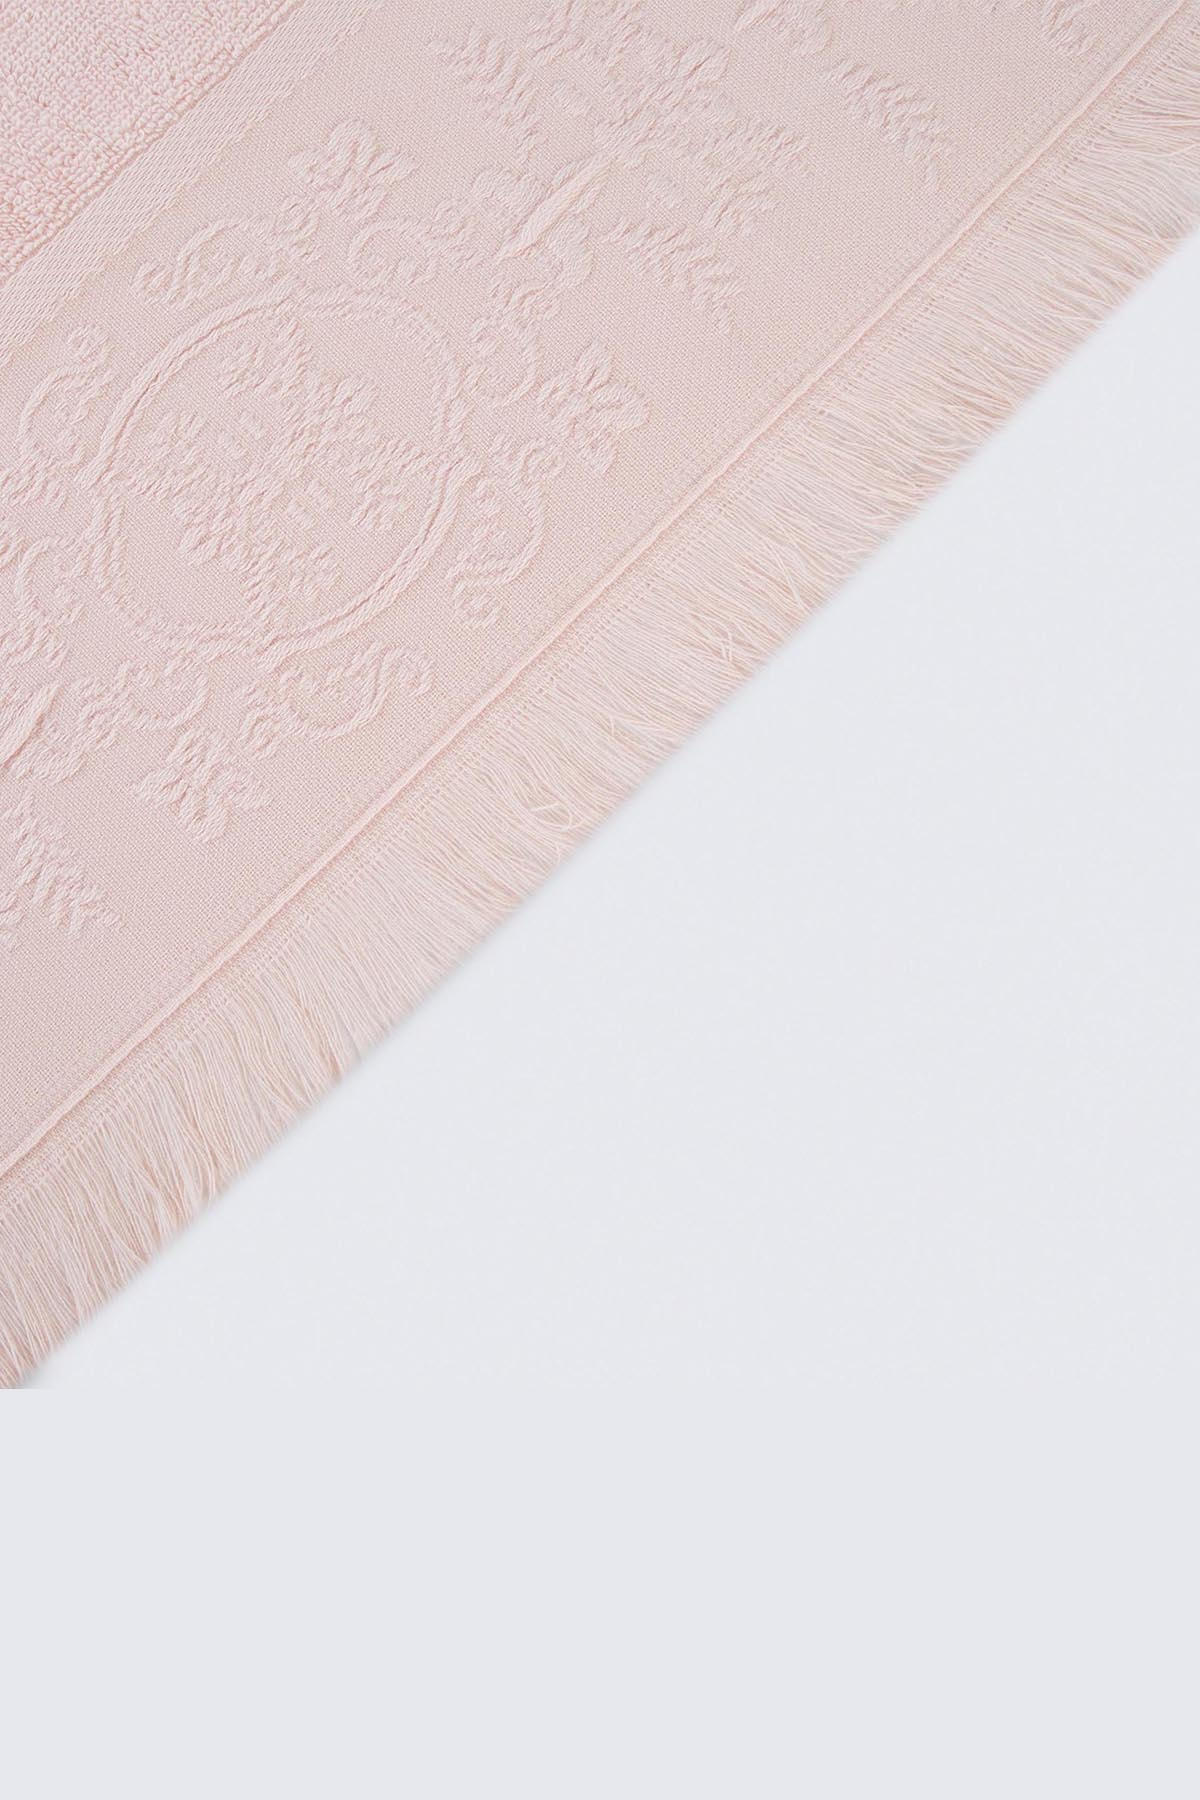 Asciugamano medaglione ricamo frange 50 x 90 cm 100 oton Polvere rosa